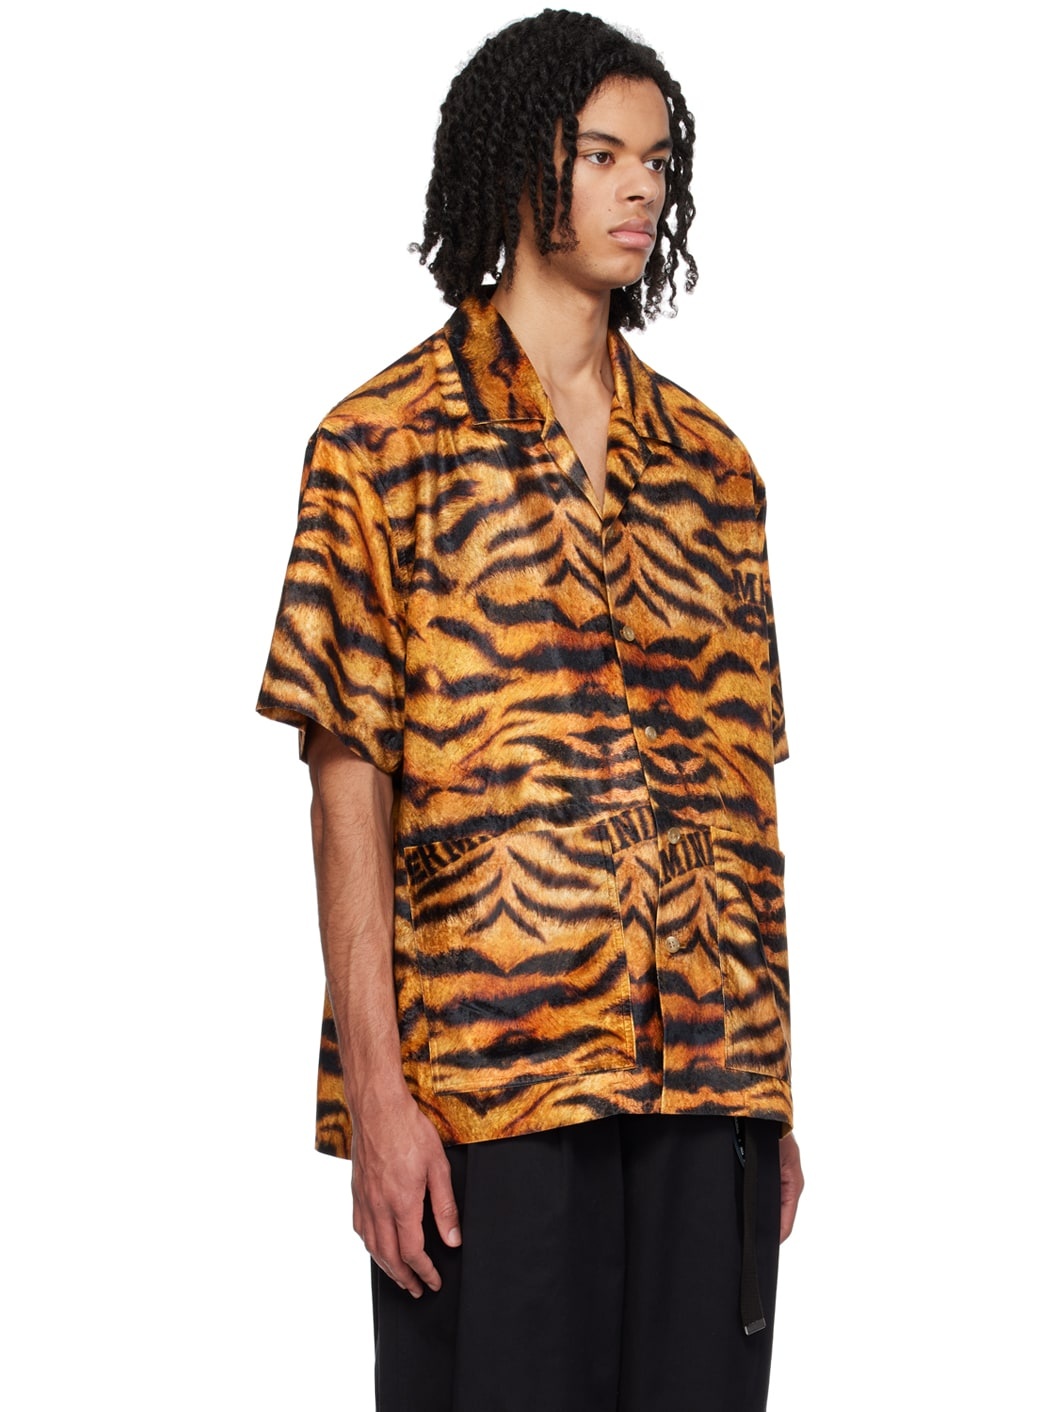 Black & Orange Tiger Shirt - 2